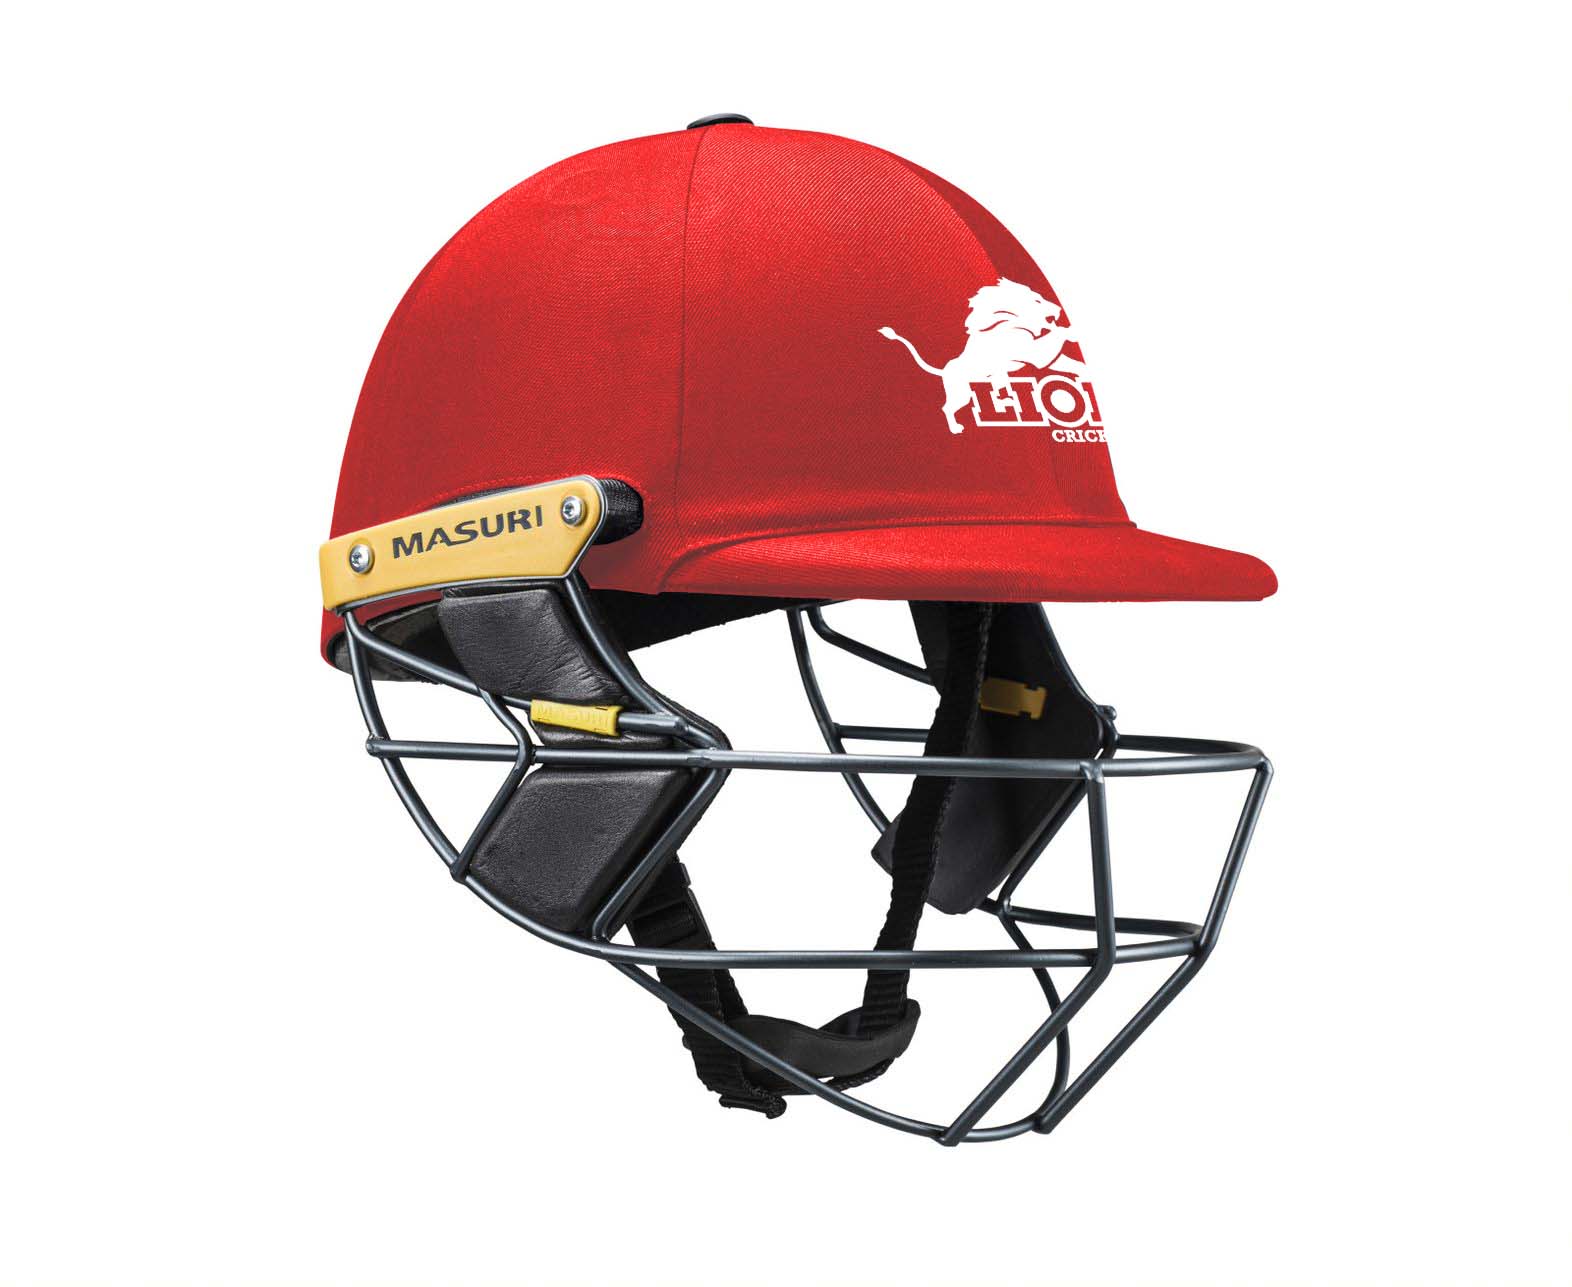 Masuri Club Helmet Melton Cricket Club Helmet